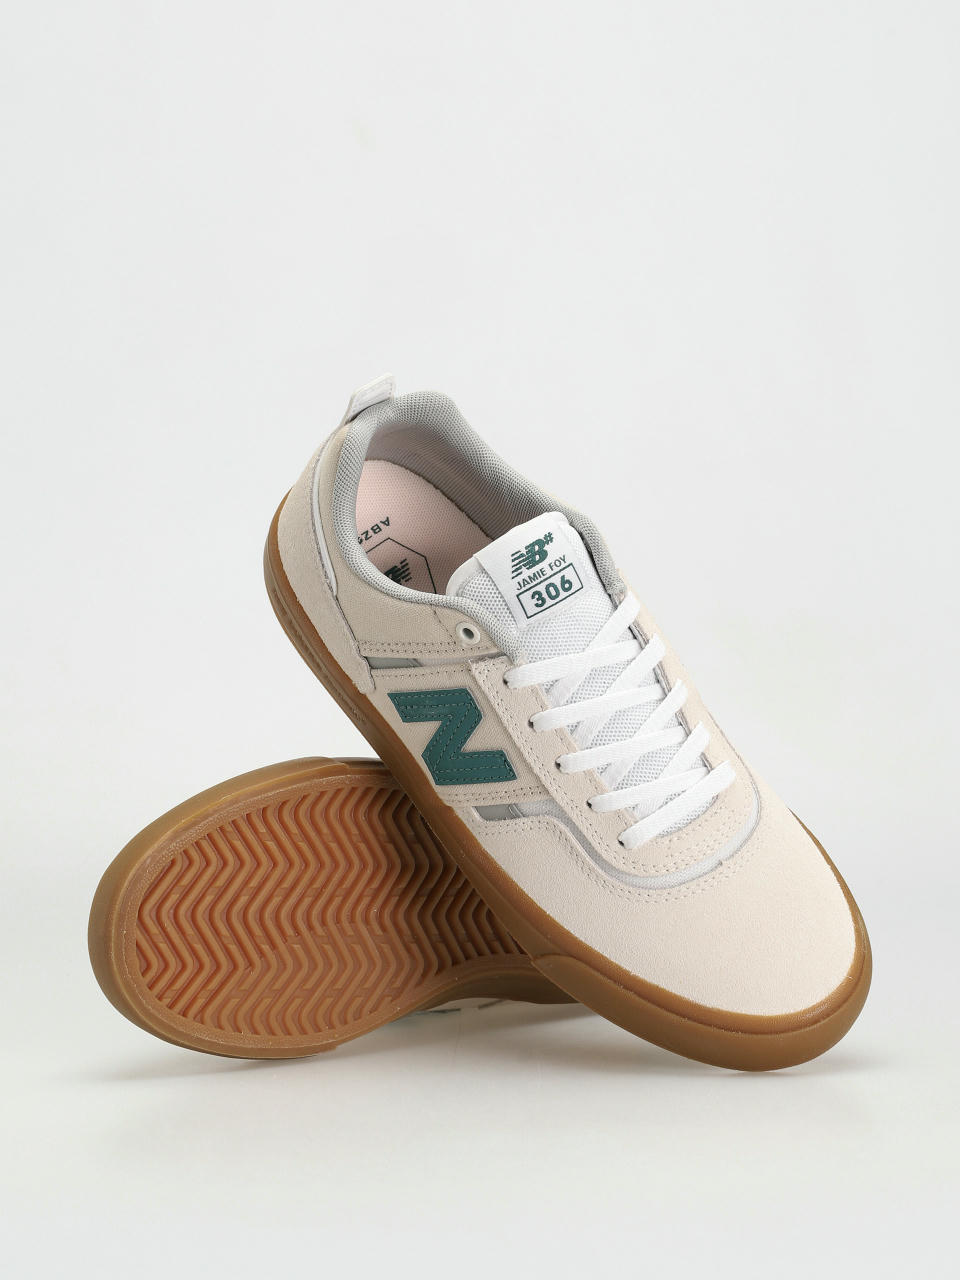 New Balance Numeric 306 Jamie Foy Sea Salt & Teal Skate Shoes